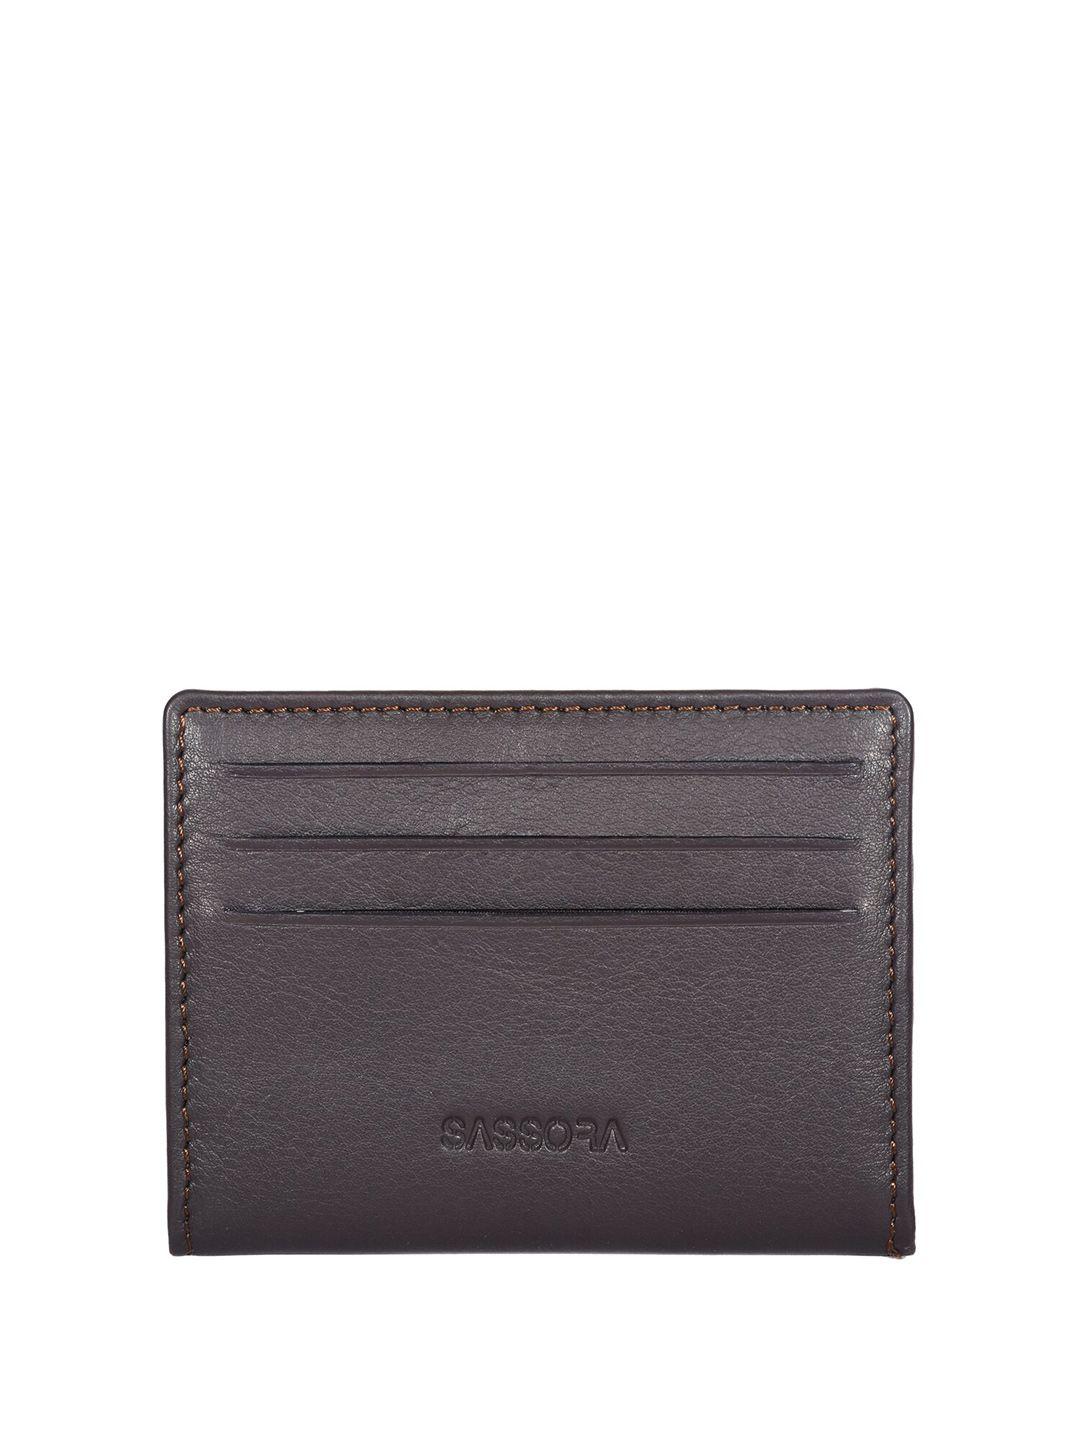 sassora unisex brown textured leather card holder